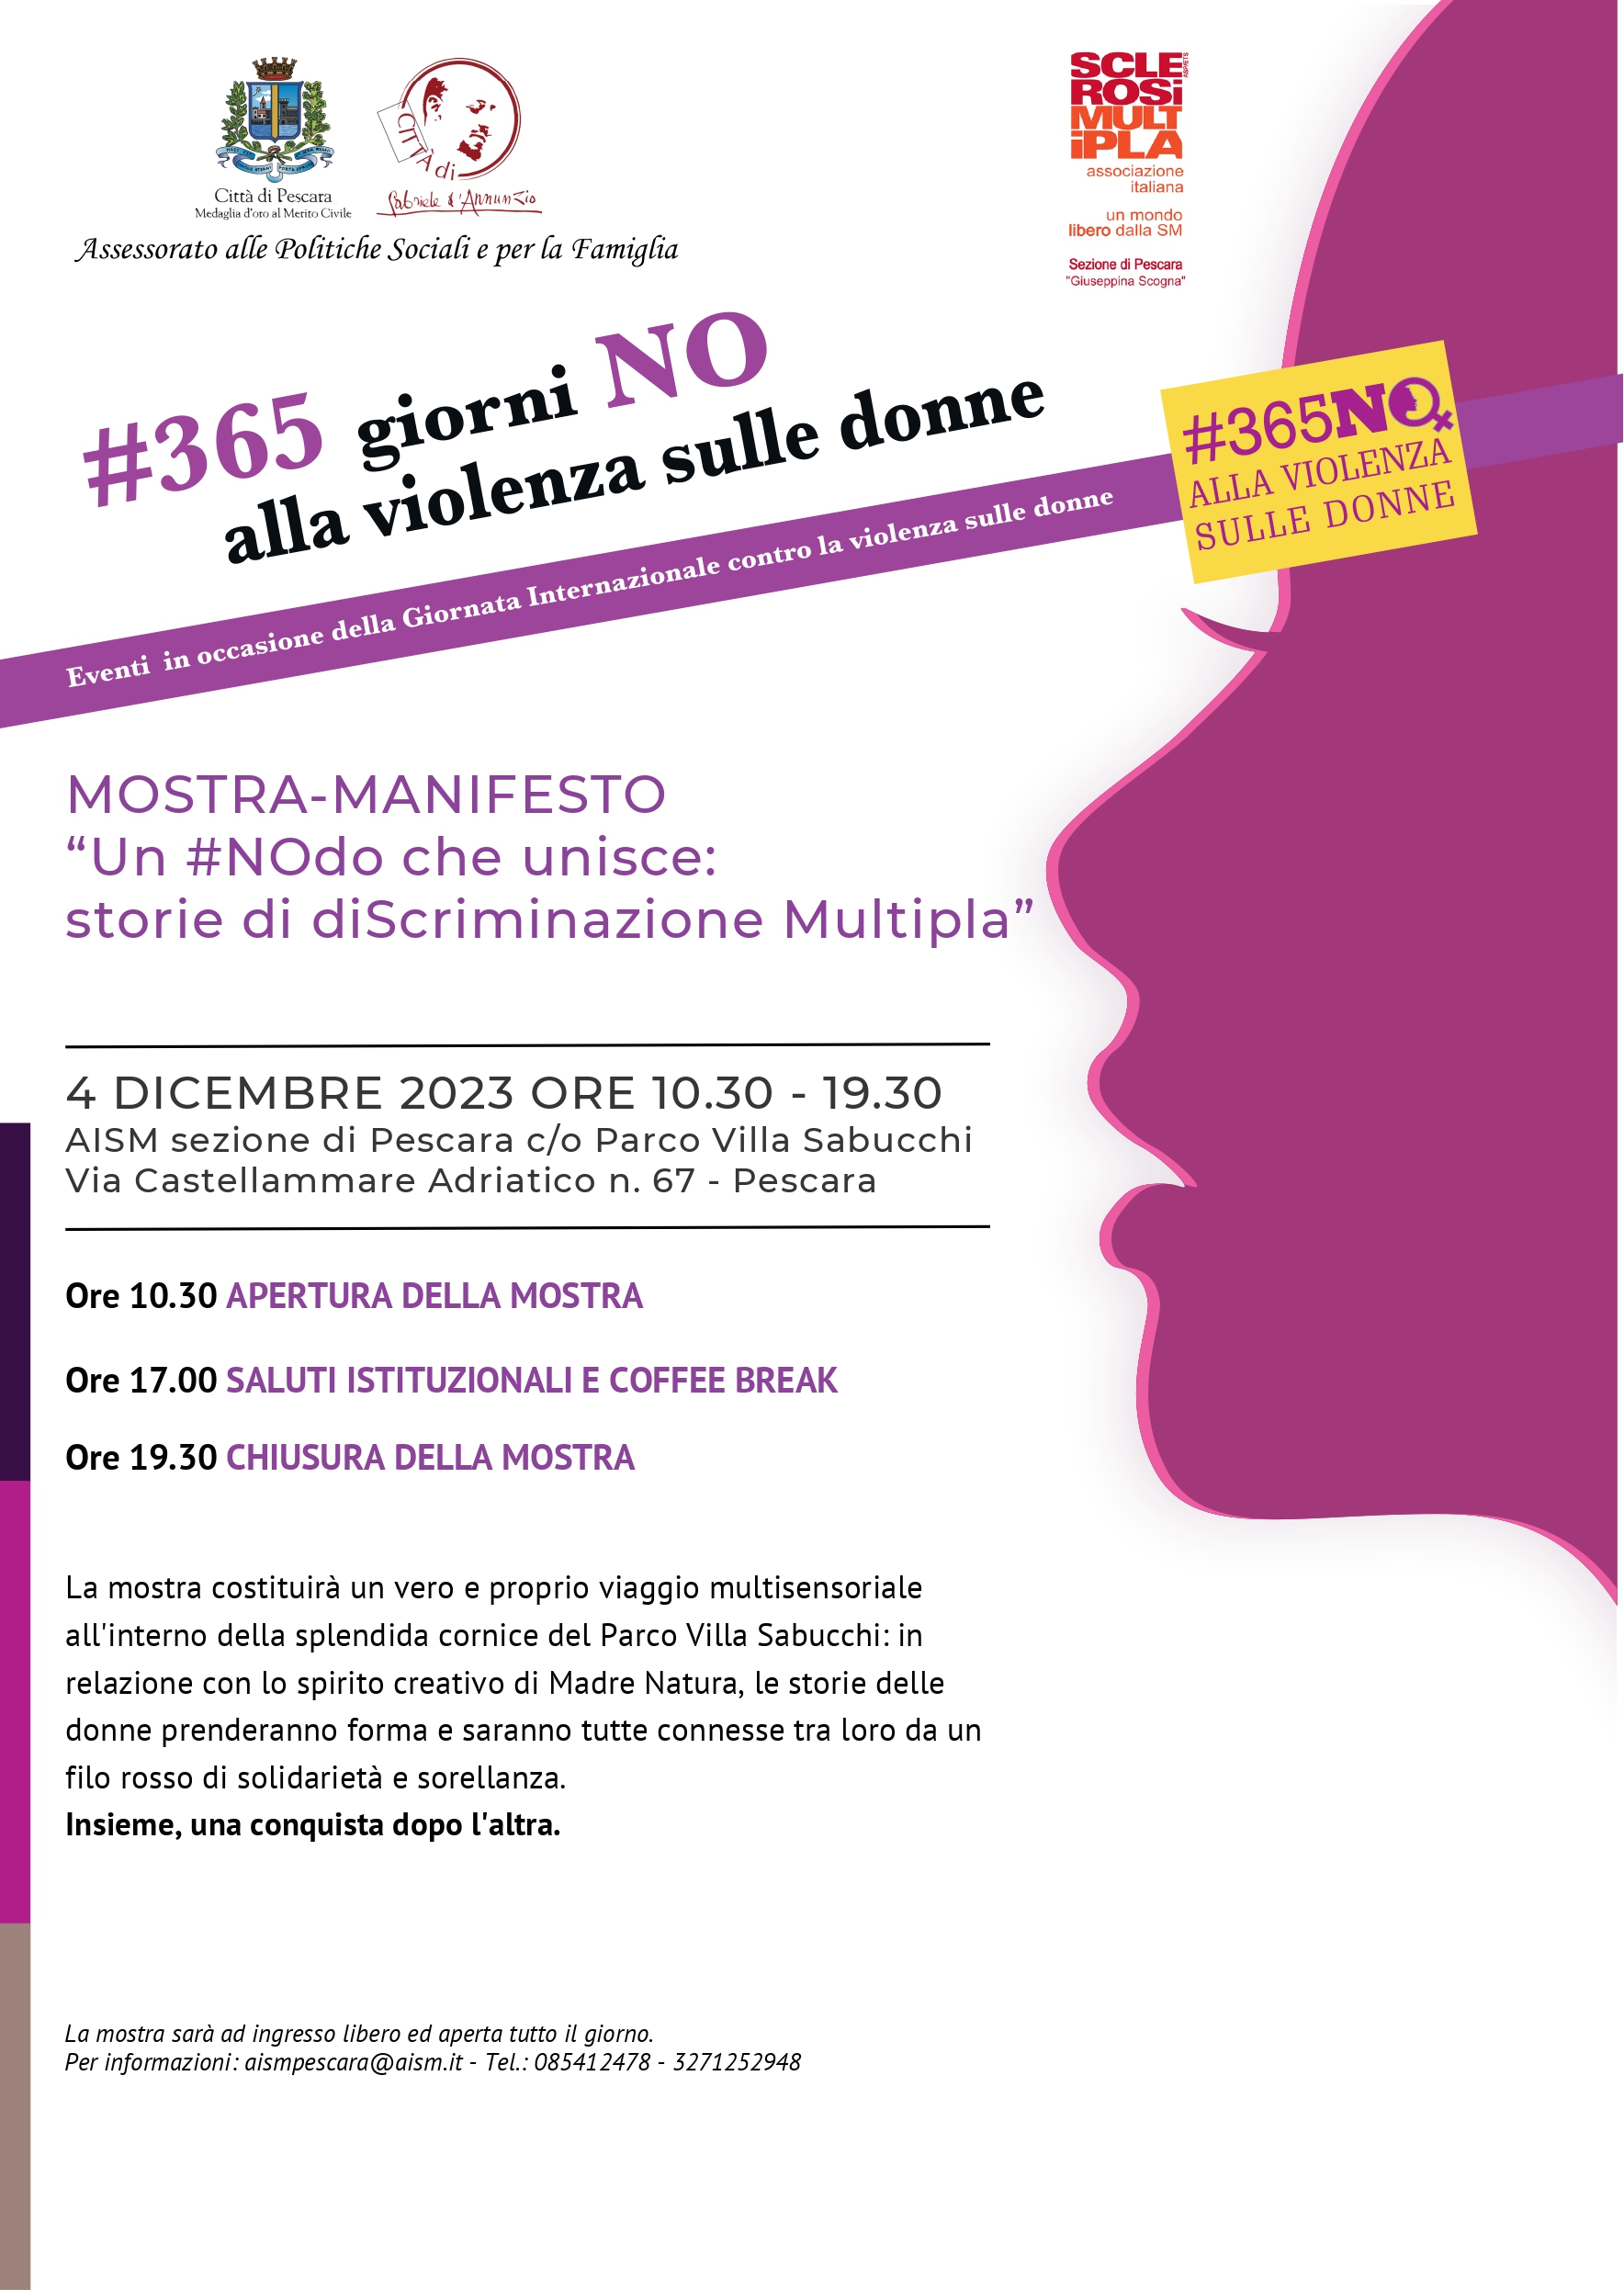 Evento "365 giorni no alla violenza sulle donne"